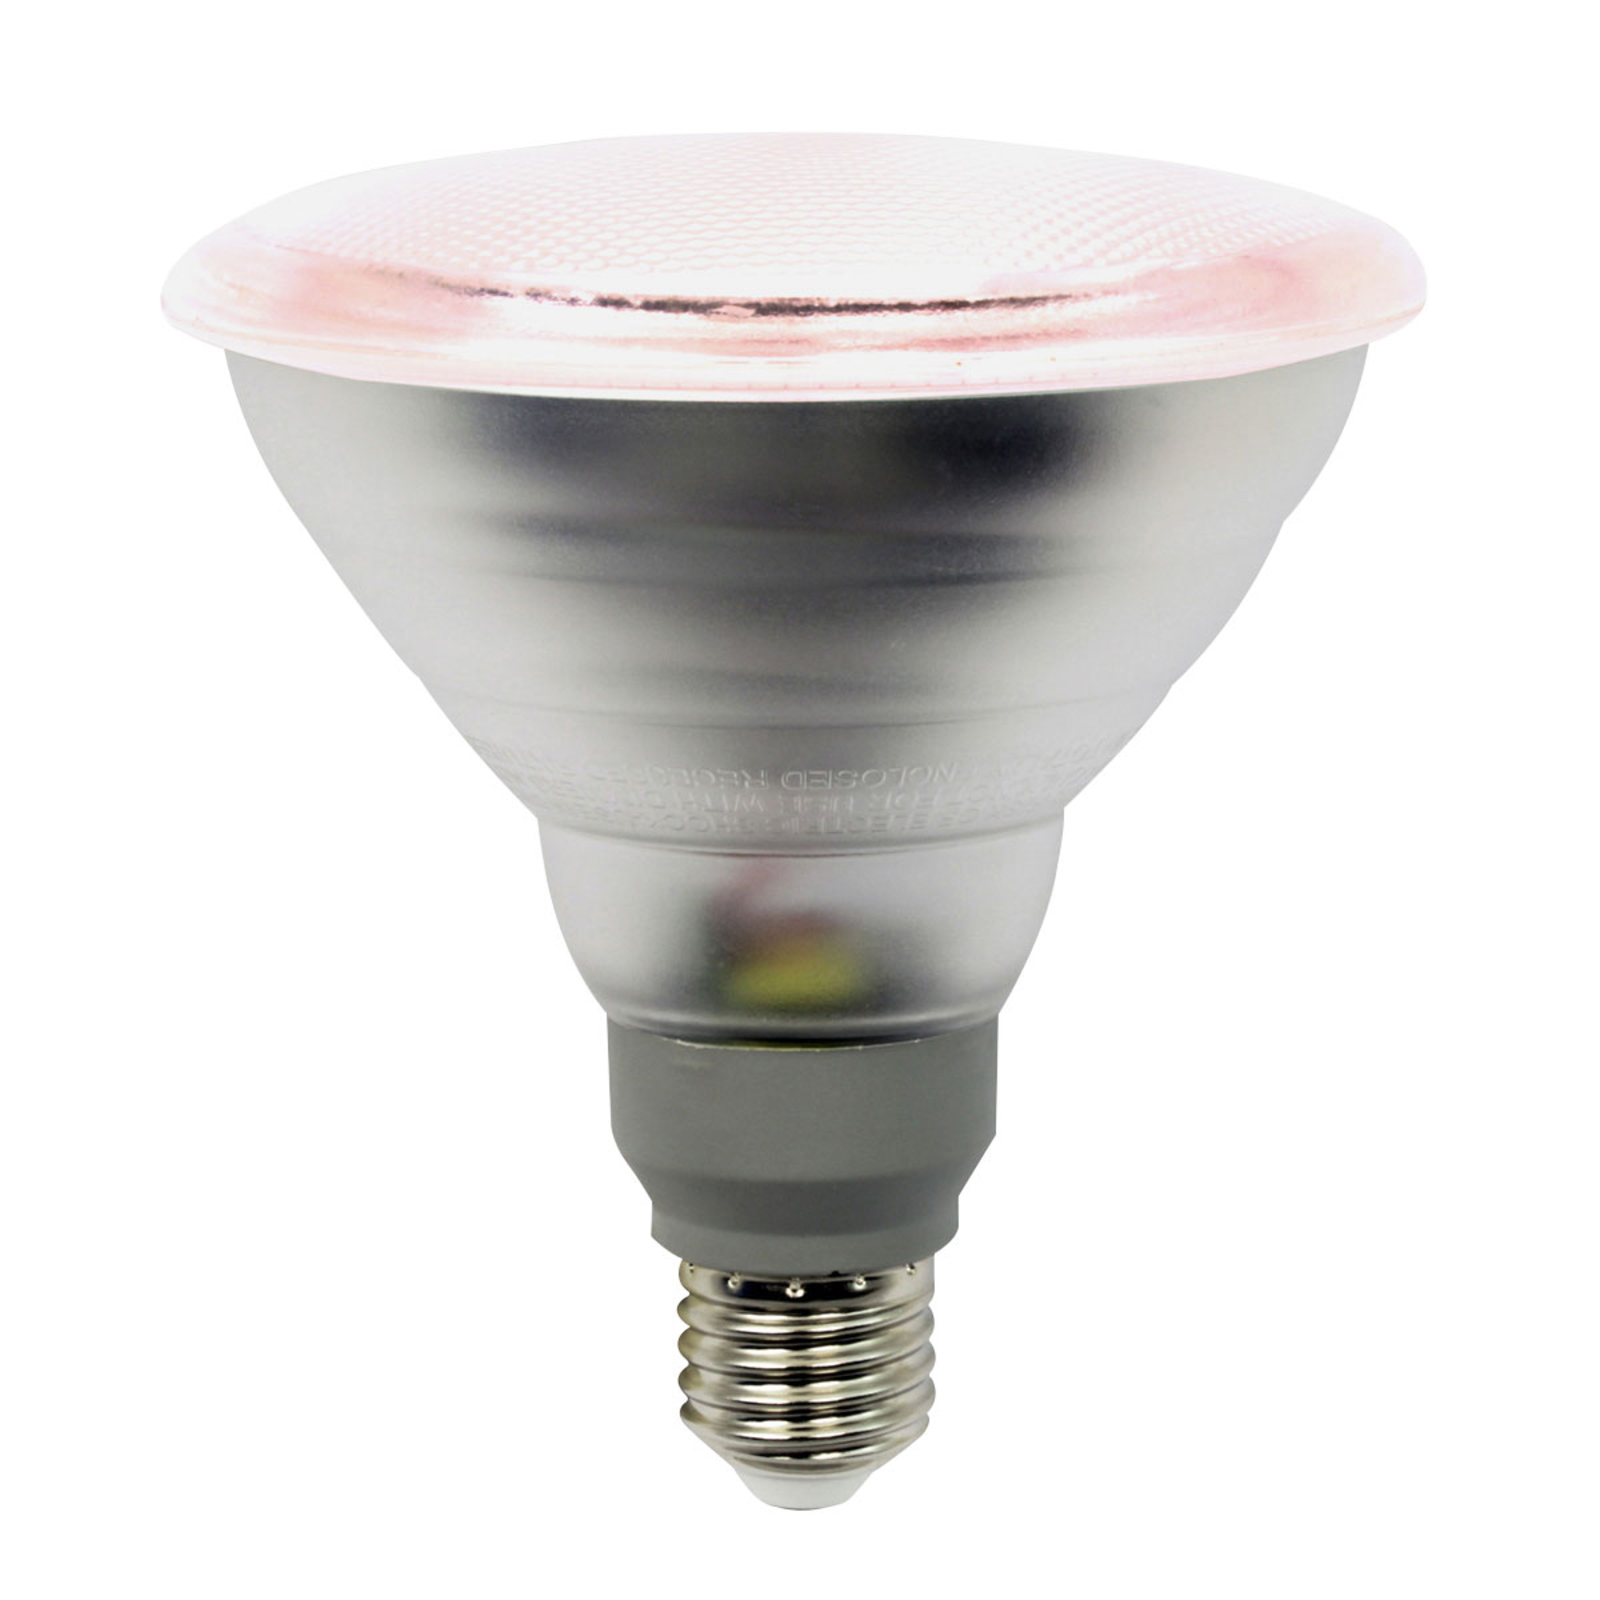 Onbevredigend Ontslag staal LED planten lamp E27 PAR38 12W 50° stralingshoek | Lampen24.be